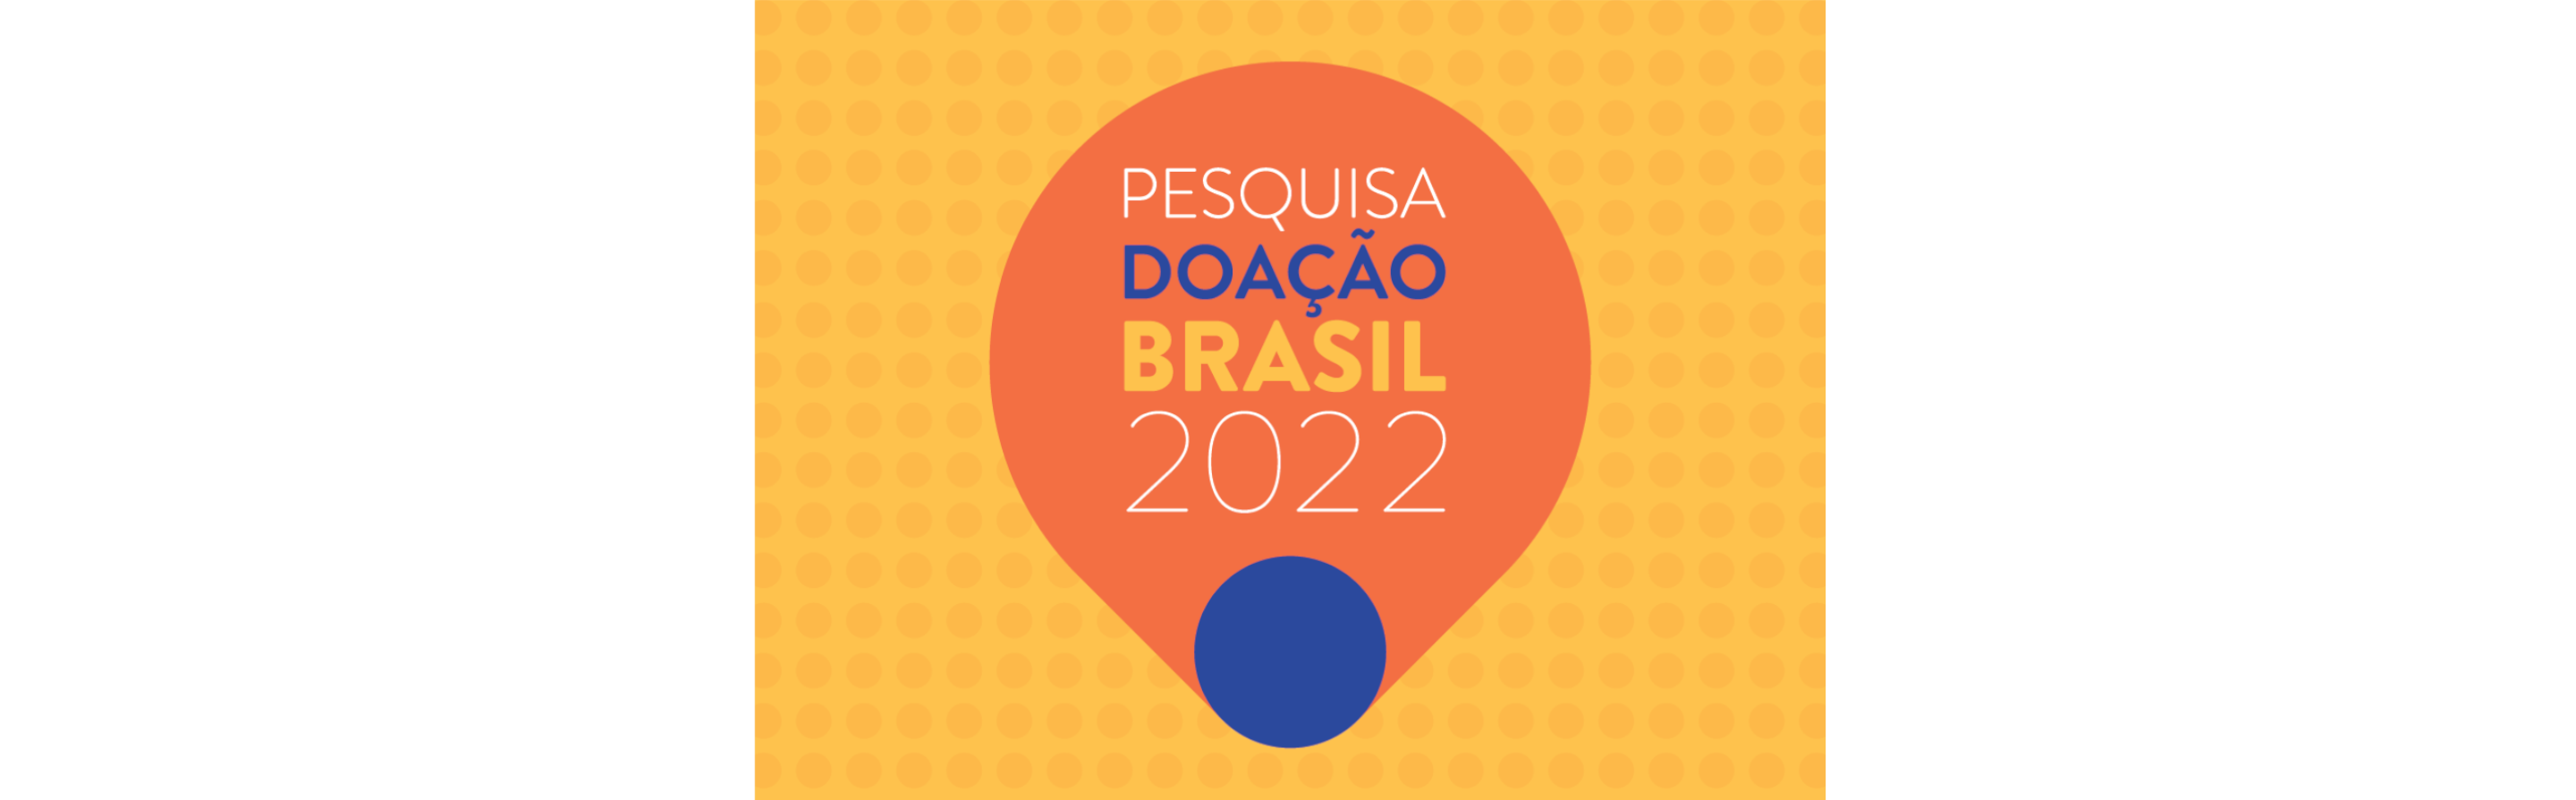 Lançamento! Pesquisa Doação Brasil 2022. O mais amplo estudo sobre doação individual do país.